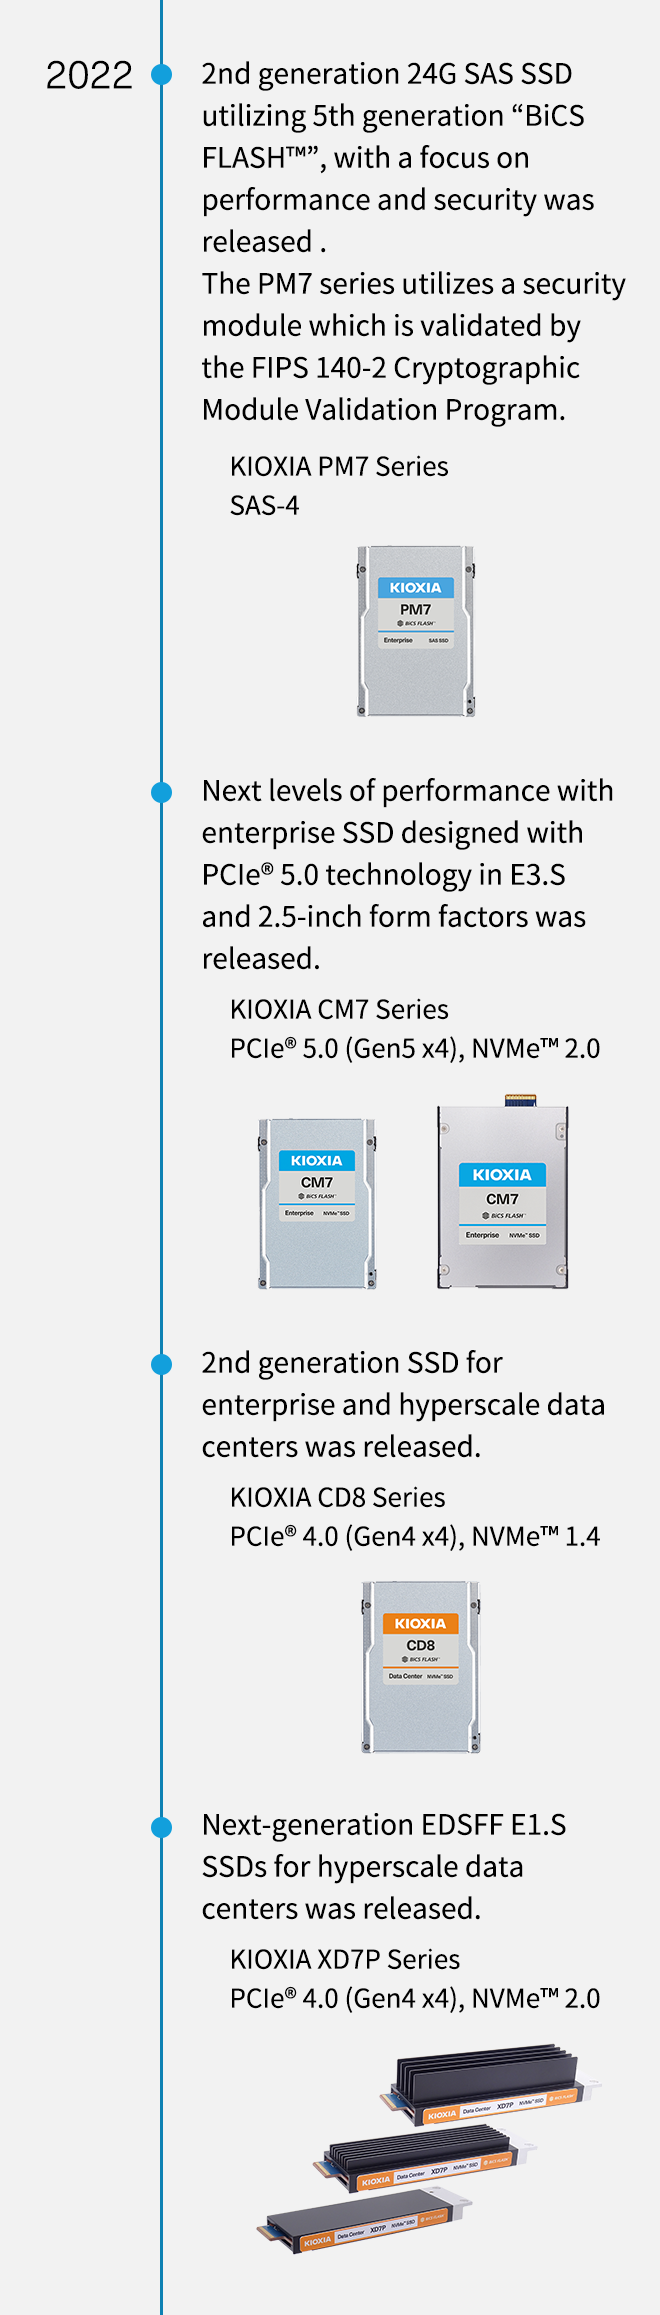 2022. Foi lançada a 2.ª geração de SSD SAS 24G utilizando a 5.ª geração de BiCS FLASH™, com foco no desempenho e na segurança. A série PM7 utiliza um módulo de segurança que é validado pelo Programa de Validação do Módulo Criptográfico FIPS 140-2. Série KIOXIA PM7 SAS-4. Foram lançados os próximos níveis de desempenho com a Enterprise SSD concebida com a tecnologia PCIe® 5.0 no E3.S e fatores de forma de 2,5 polegadas. Foi lançada a SSD de 2.ª geração da série KIOXIA CM7 PCIe® 5.0 (5.ª Geração x4), NVMe™ 2.0 para empresas e centros de dados em hiperescala. Série KIOXIA CD8 PCIe® 4.0 (4.ª Geração x4), NVMe™ 1.4. Foi lançada a SSD EDSFF E1.S de próxima geração para centros de dados em hiperescala. Série KIOXIA XD7P PCIe® 4.0 (4.ª Geração x4), NVMe™ 2.0